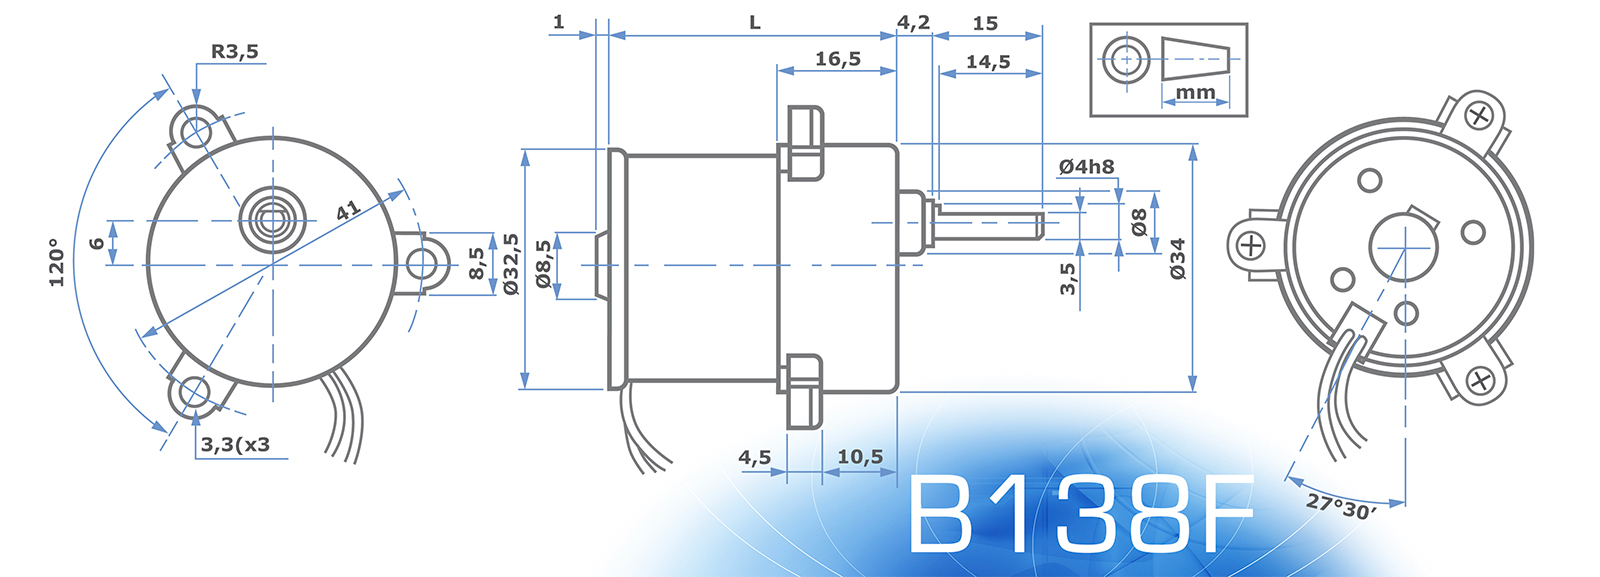 Micro Motor BS138F.4 12.72 